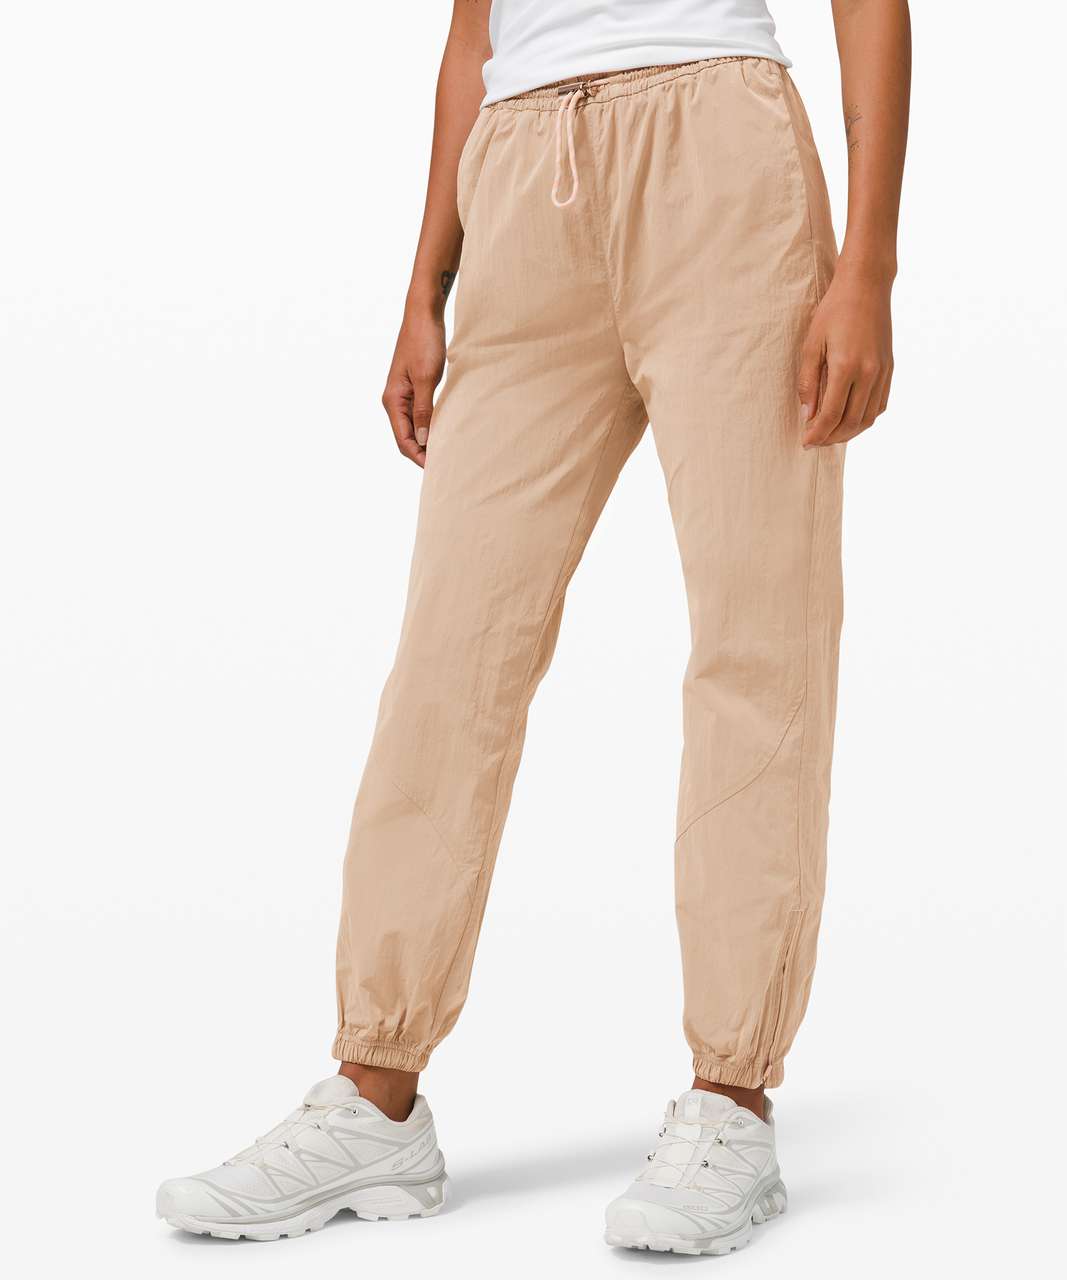 Women's Jogger Pants, Black, Cotton Blend - Jenni Joggers – Evergreen  Clothing